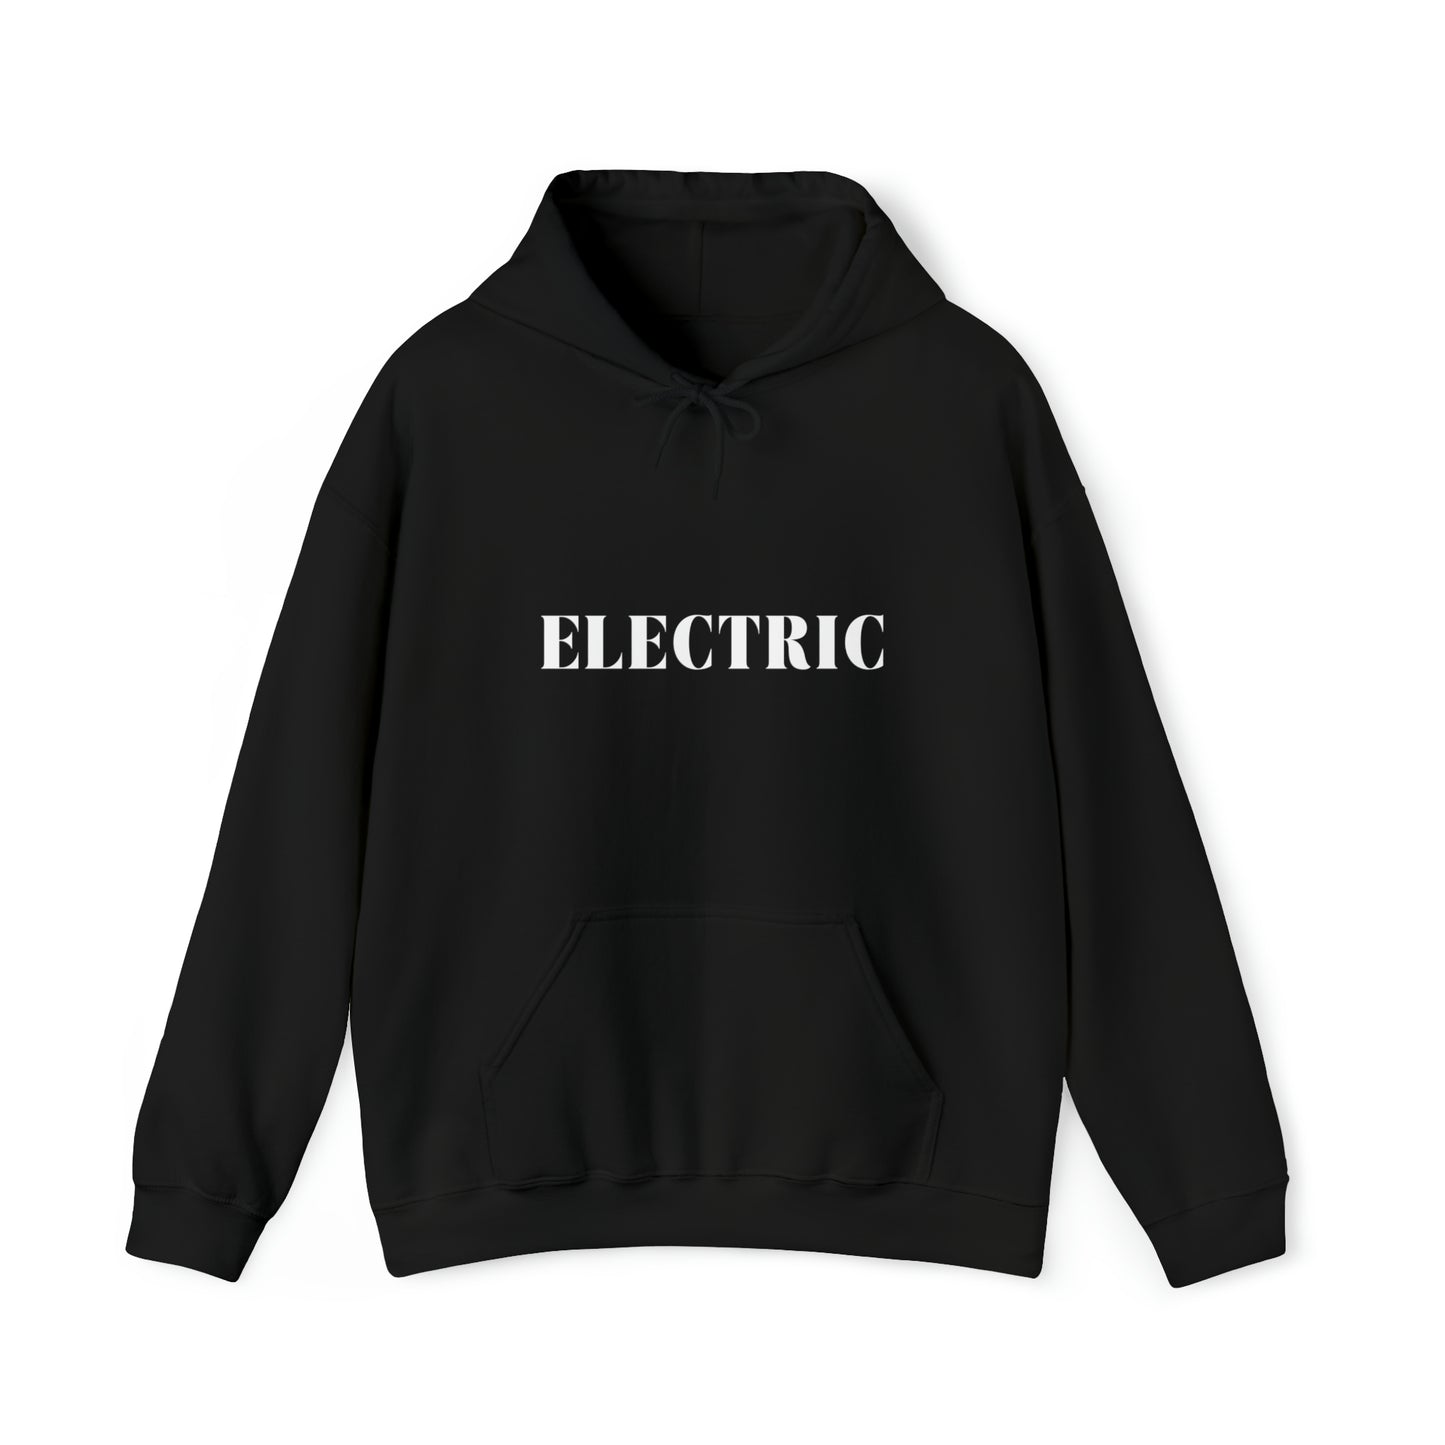 S Black Electric Hoodie from HoodySZN.com